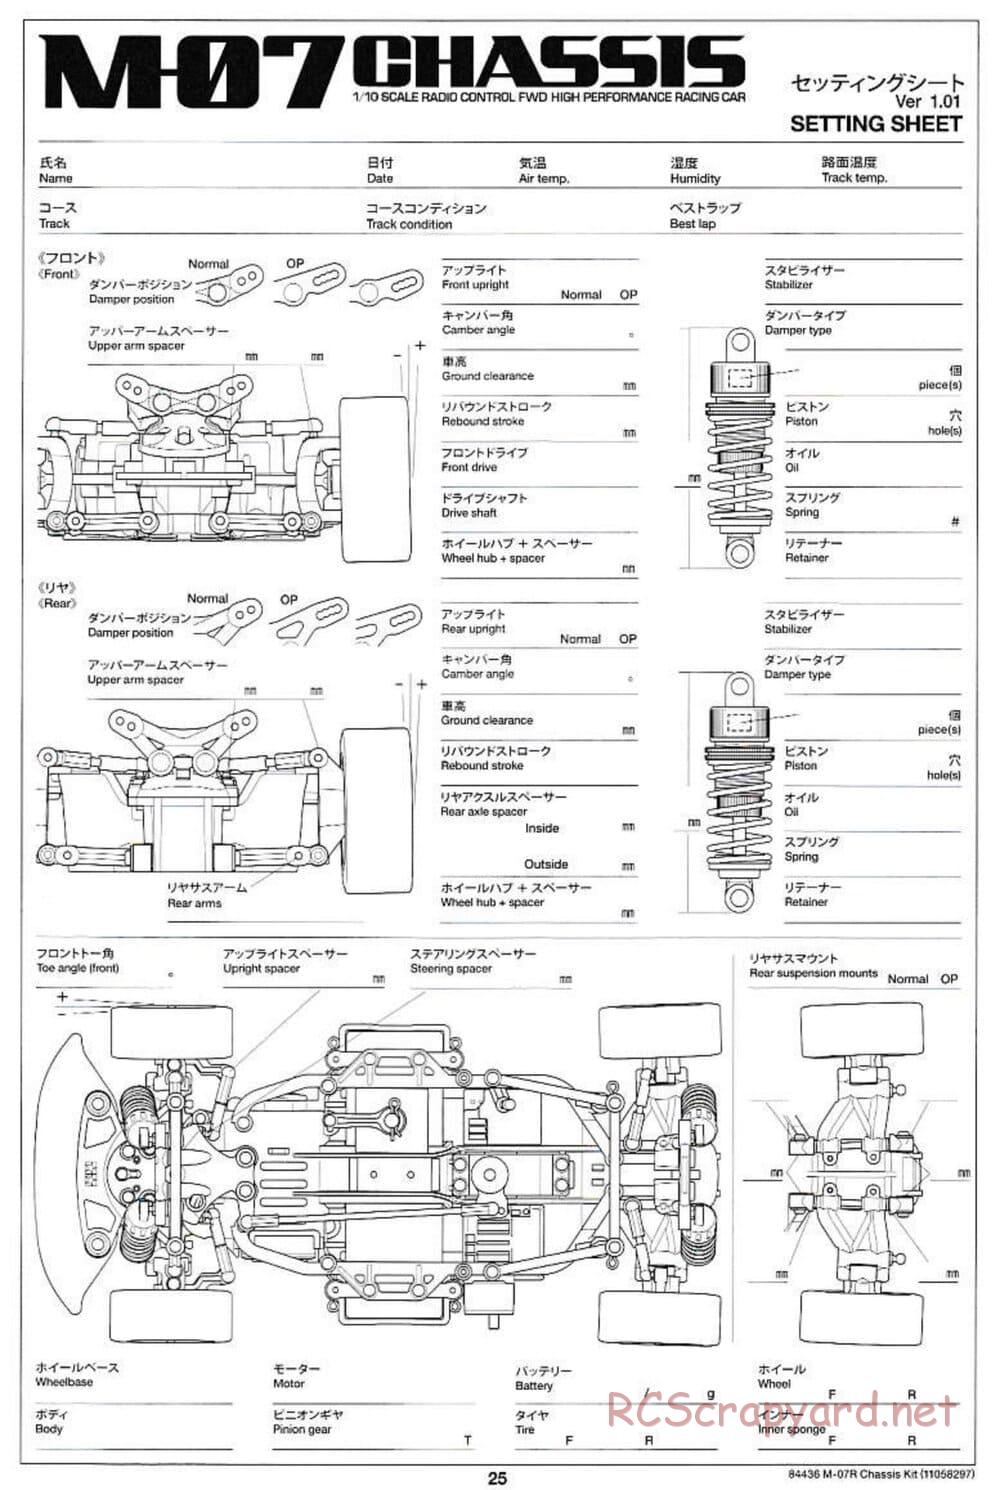 Tamiya - M-07R Chassis - Manual - Page 25